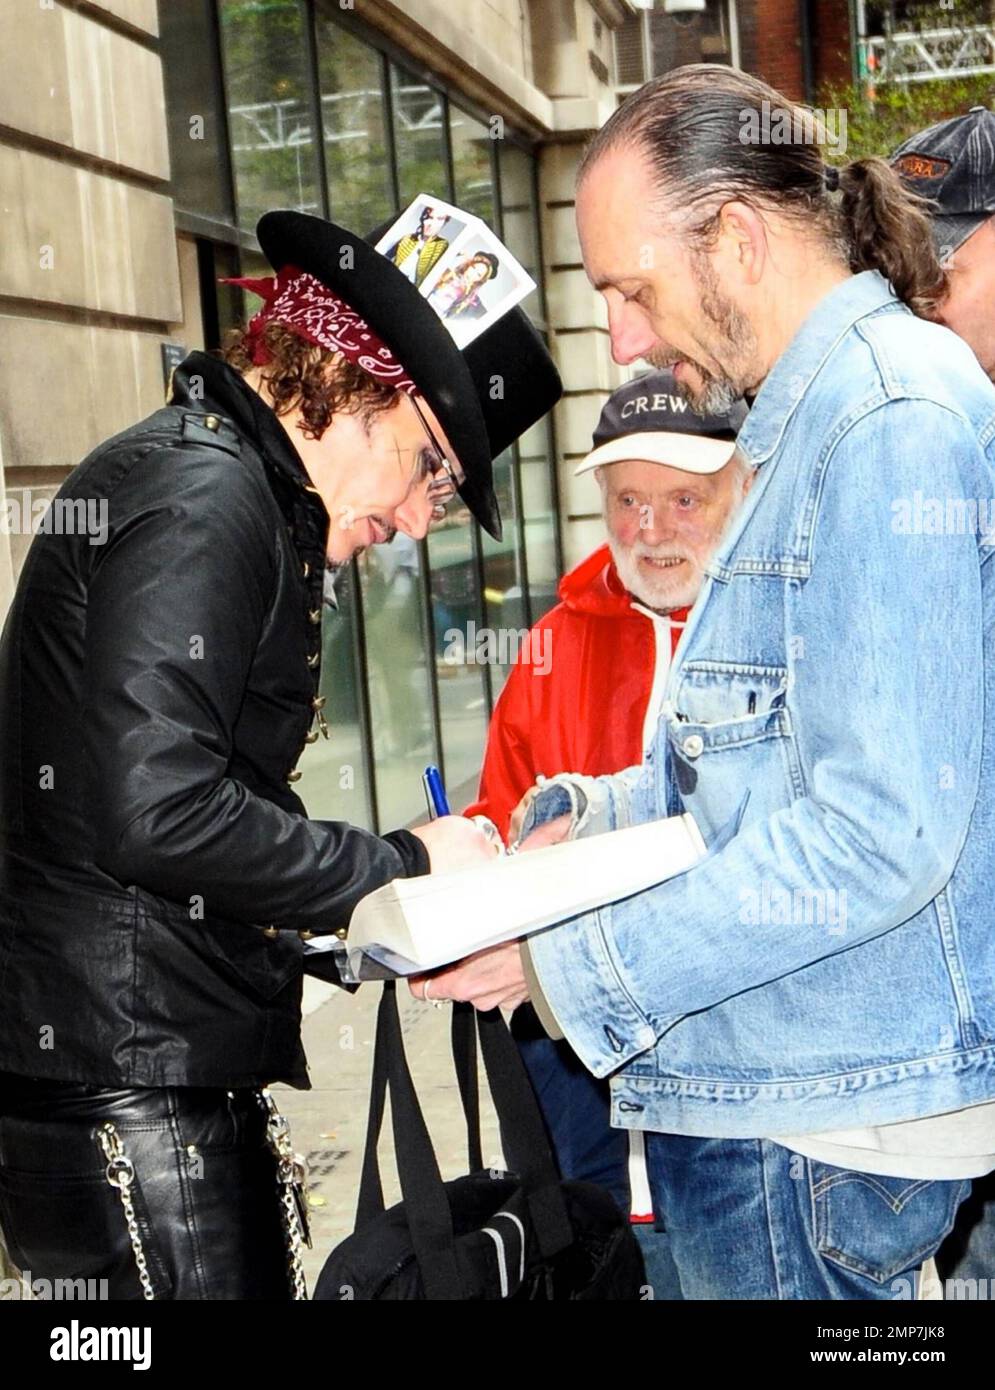 Con un atuendo completamente negro con un sombrero de copa acentuado con dos cartas, una de él y una de Boy el Adam Ant firma autógrafos para los fans cuando